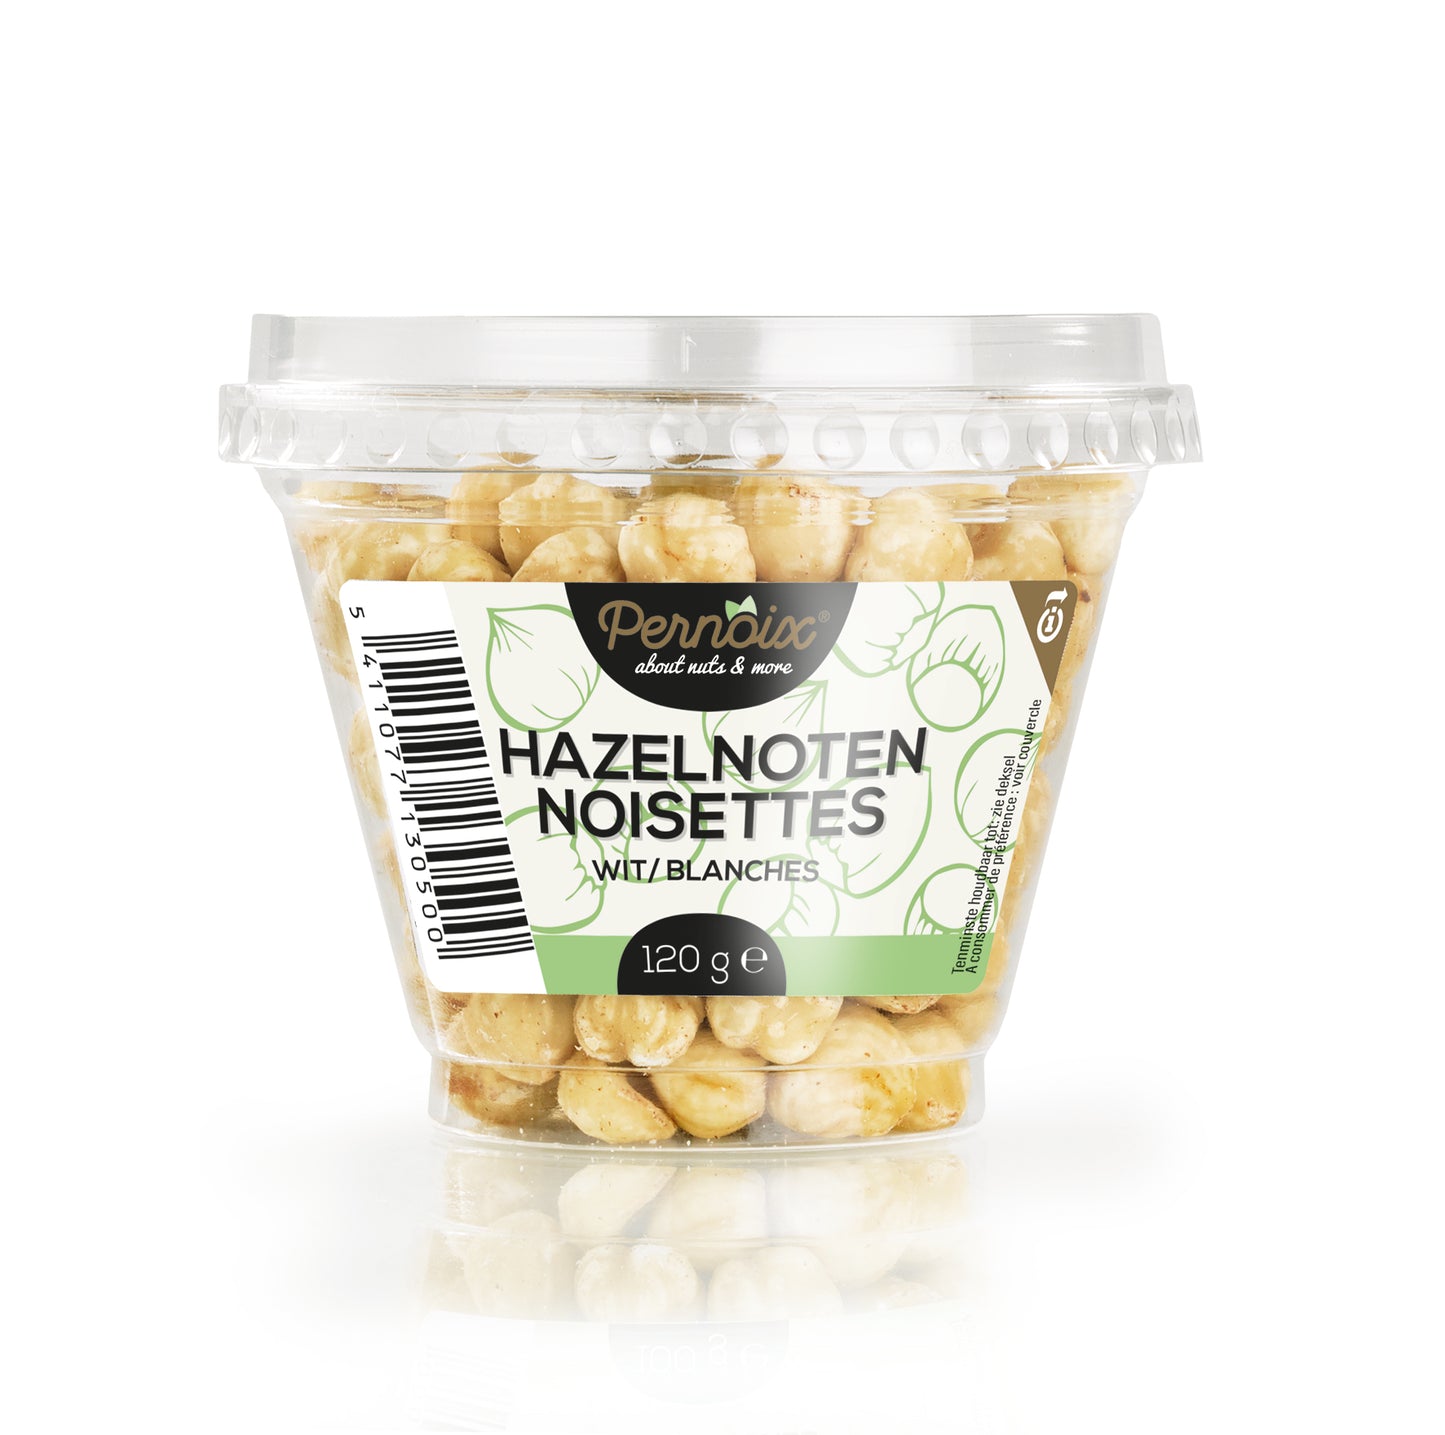 Hazelnuts 